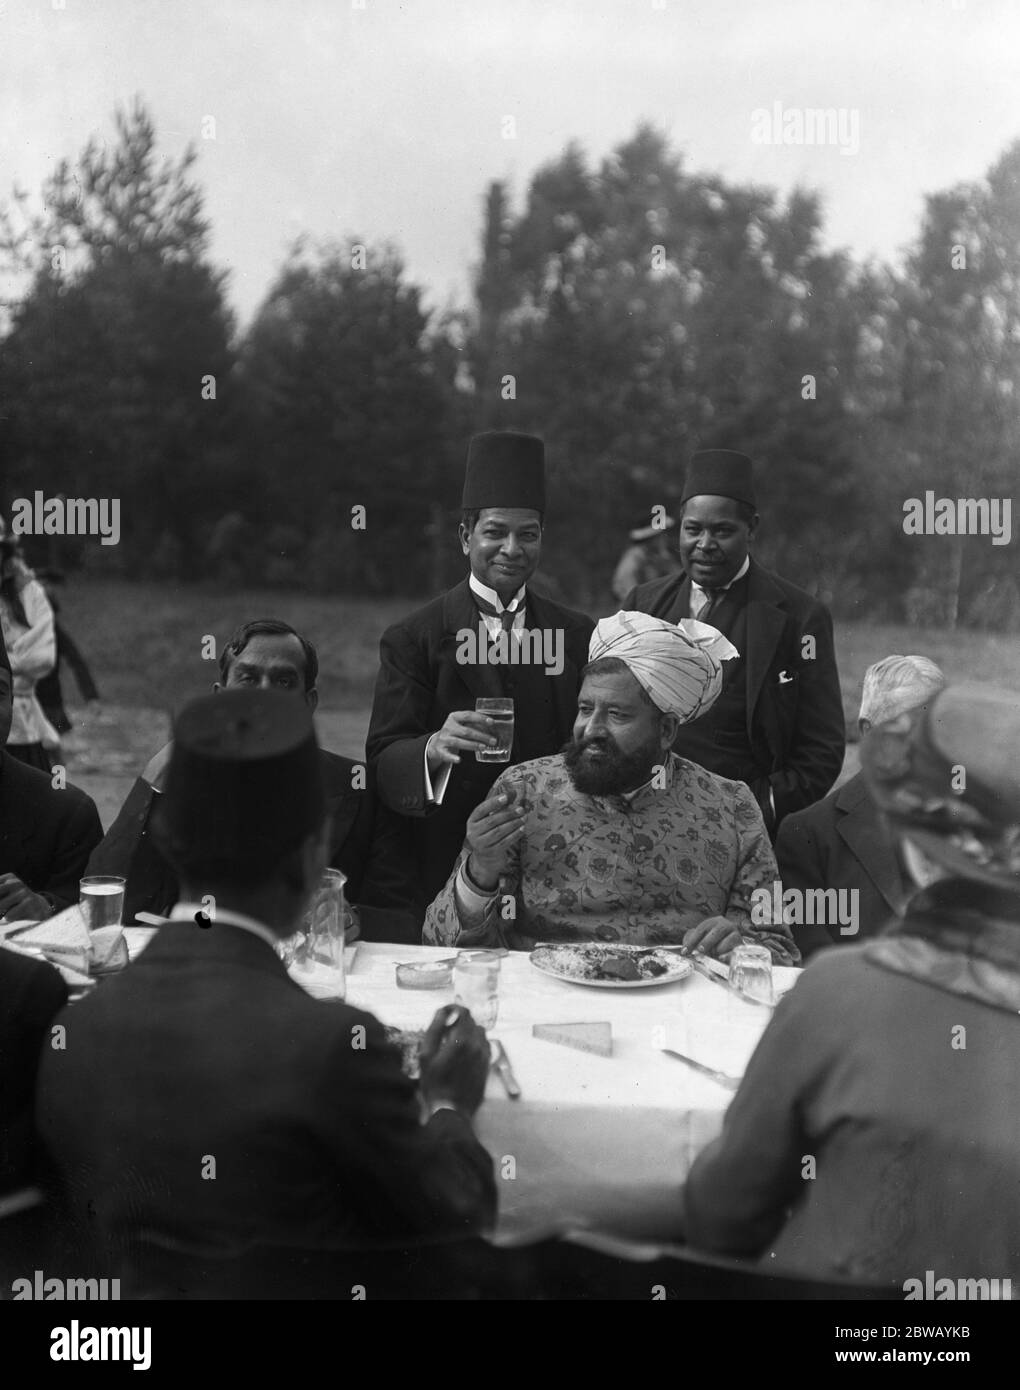 Il mangiare Imam durante la Festa del sacrificio nei giardini della Moschea a Woking , Surrey . 8 ottobre 1916 la moschea Shah Jahan fu la prima moschea costruita appositamente in Europa al di fuori della Spagna musulmana Foto Stock